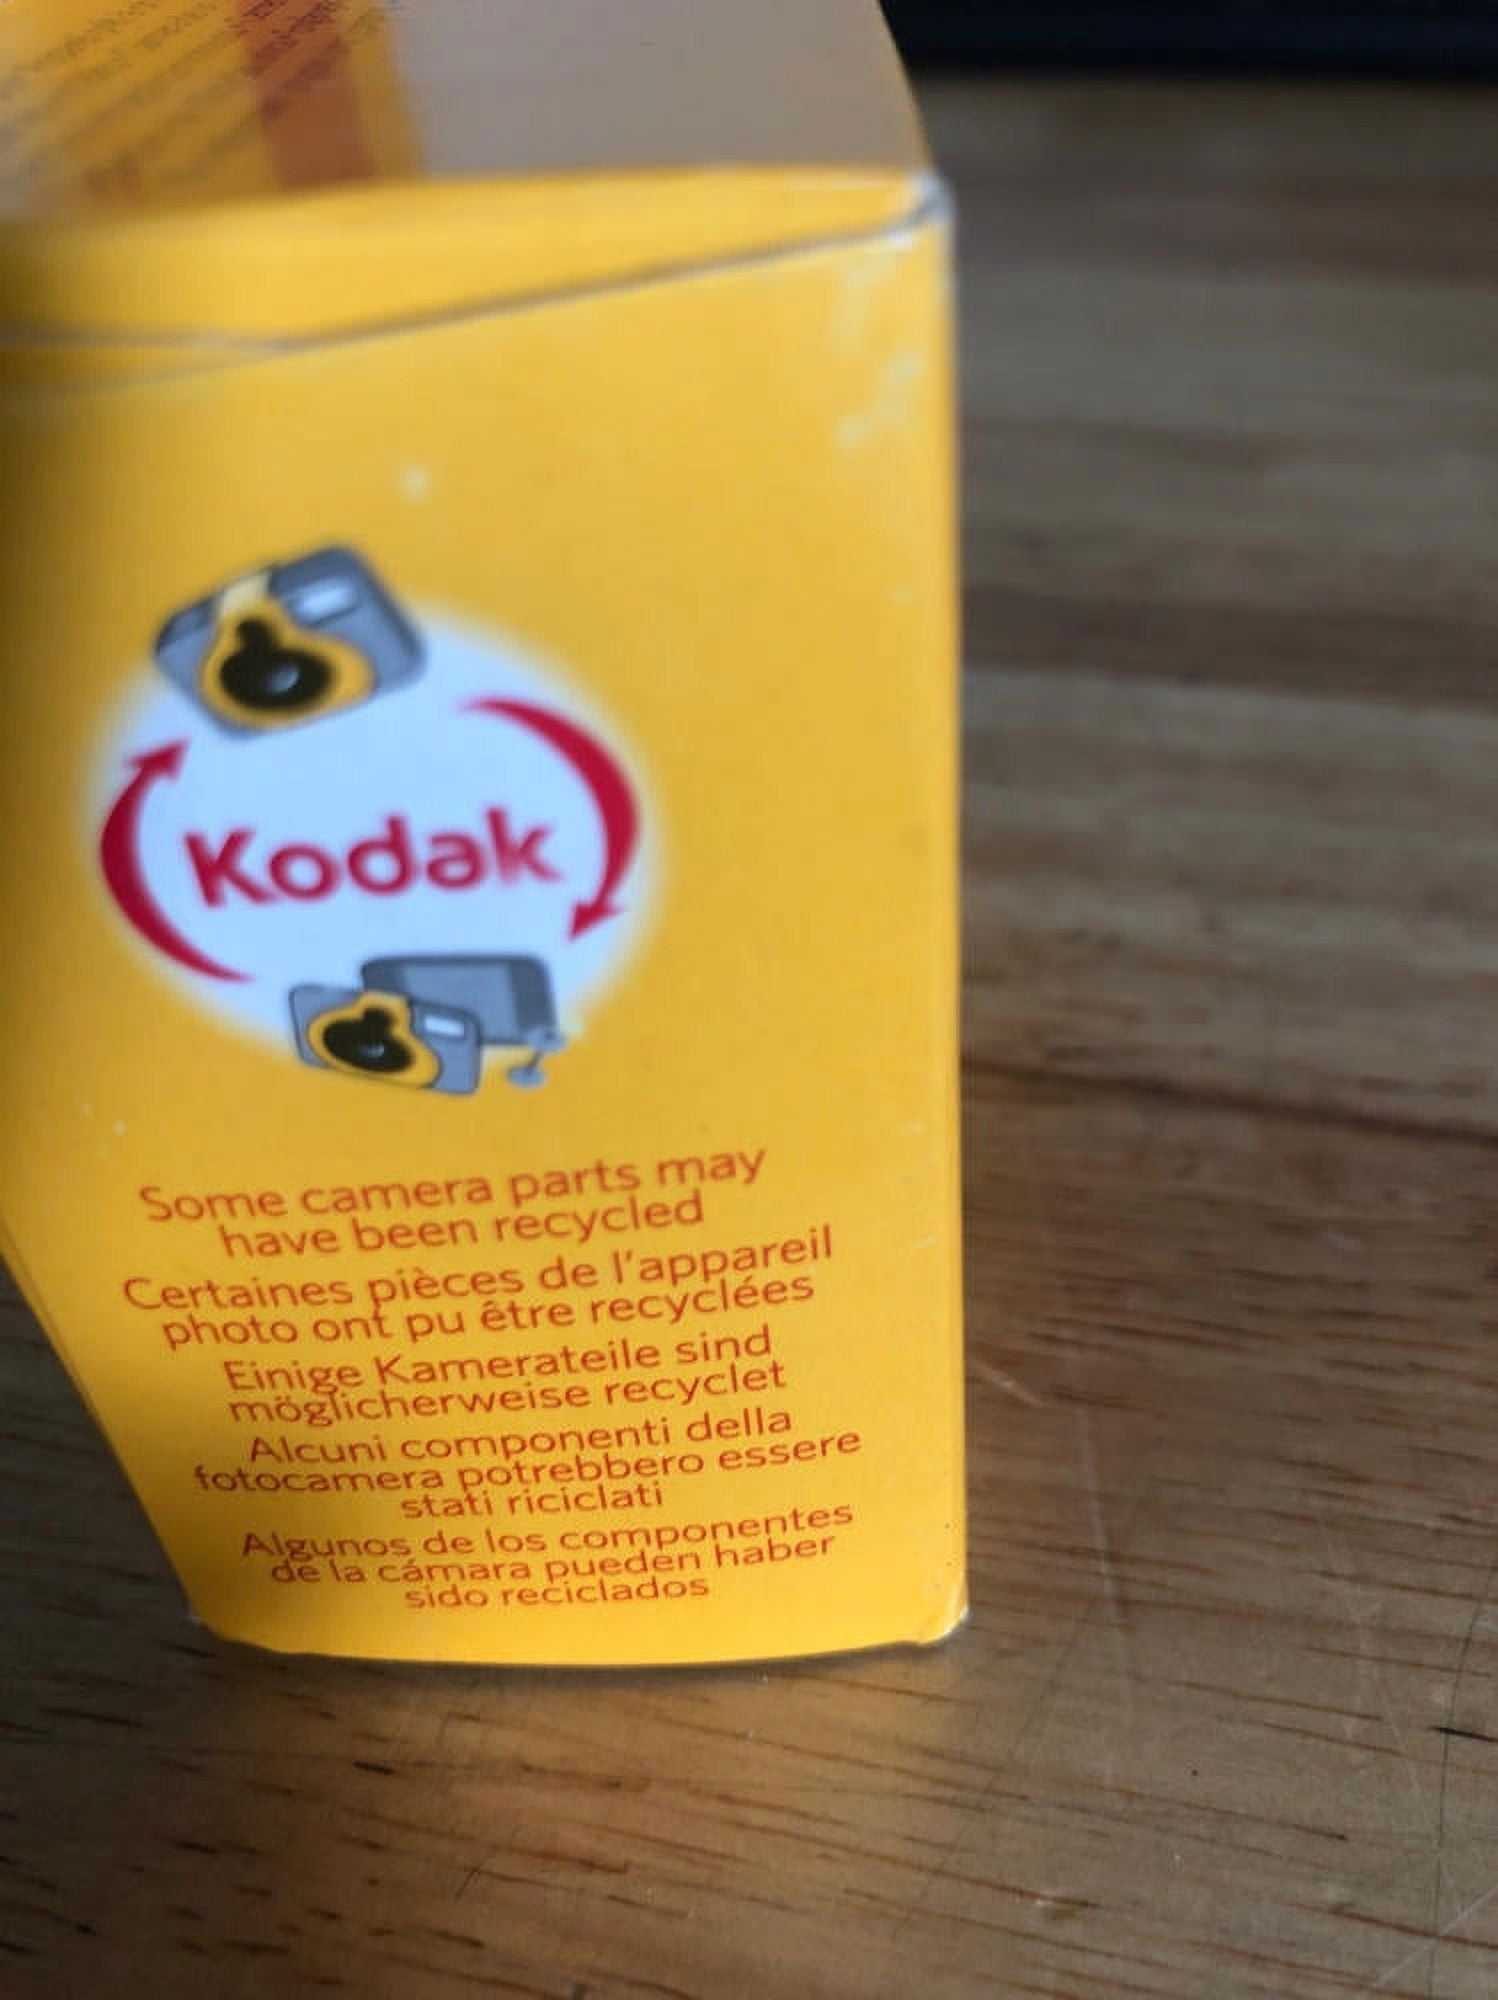 kodak 3920949 Fun Saver Single Use Camera with Flash (Yellow/Red) 